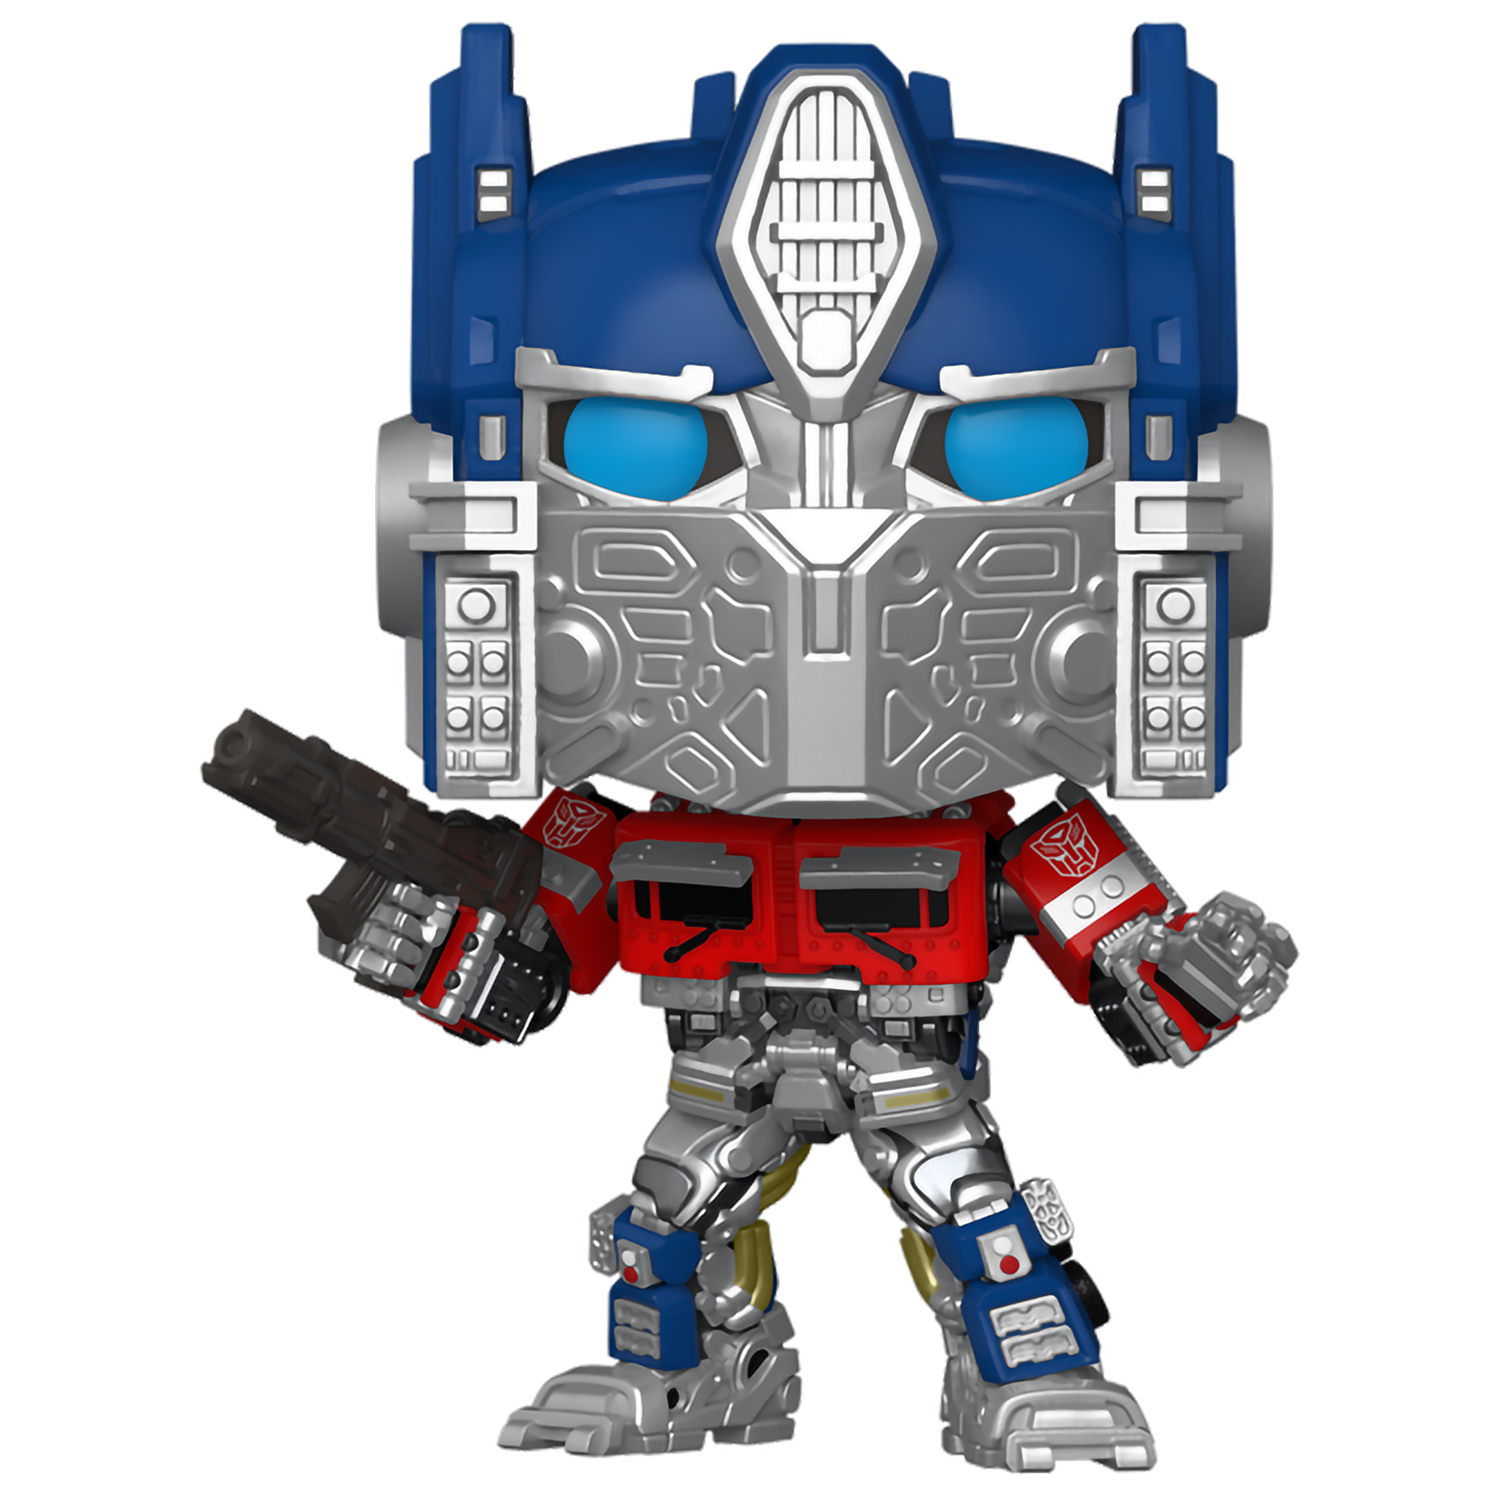 Игрушка трансформер Оптимус Прайм из мультфильма «Transformers» купить в Украине